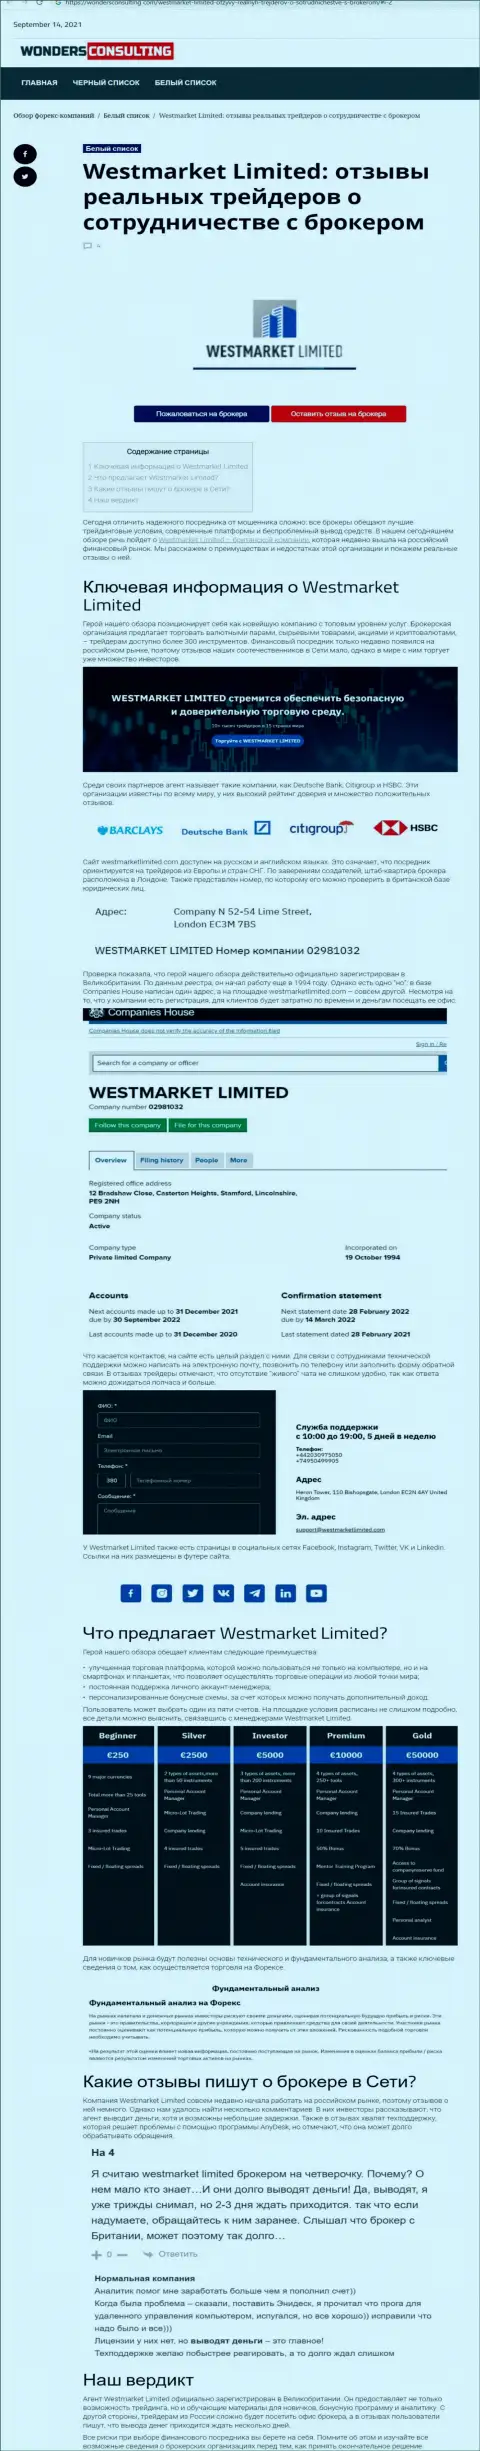 Статья об Форекс брокере WestMarket Limited на сайте WondersConsulting Com